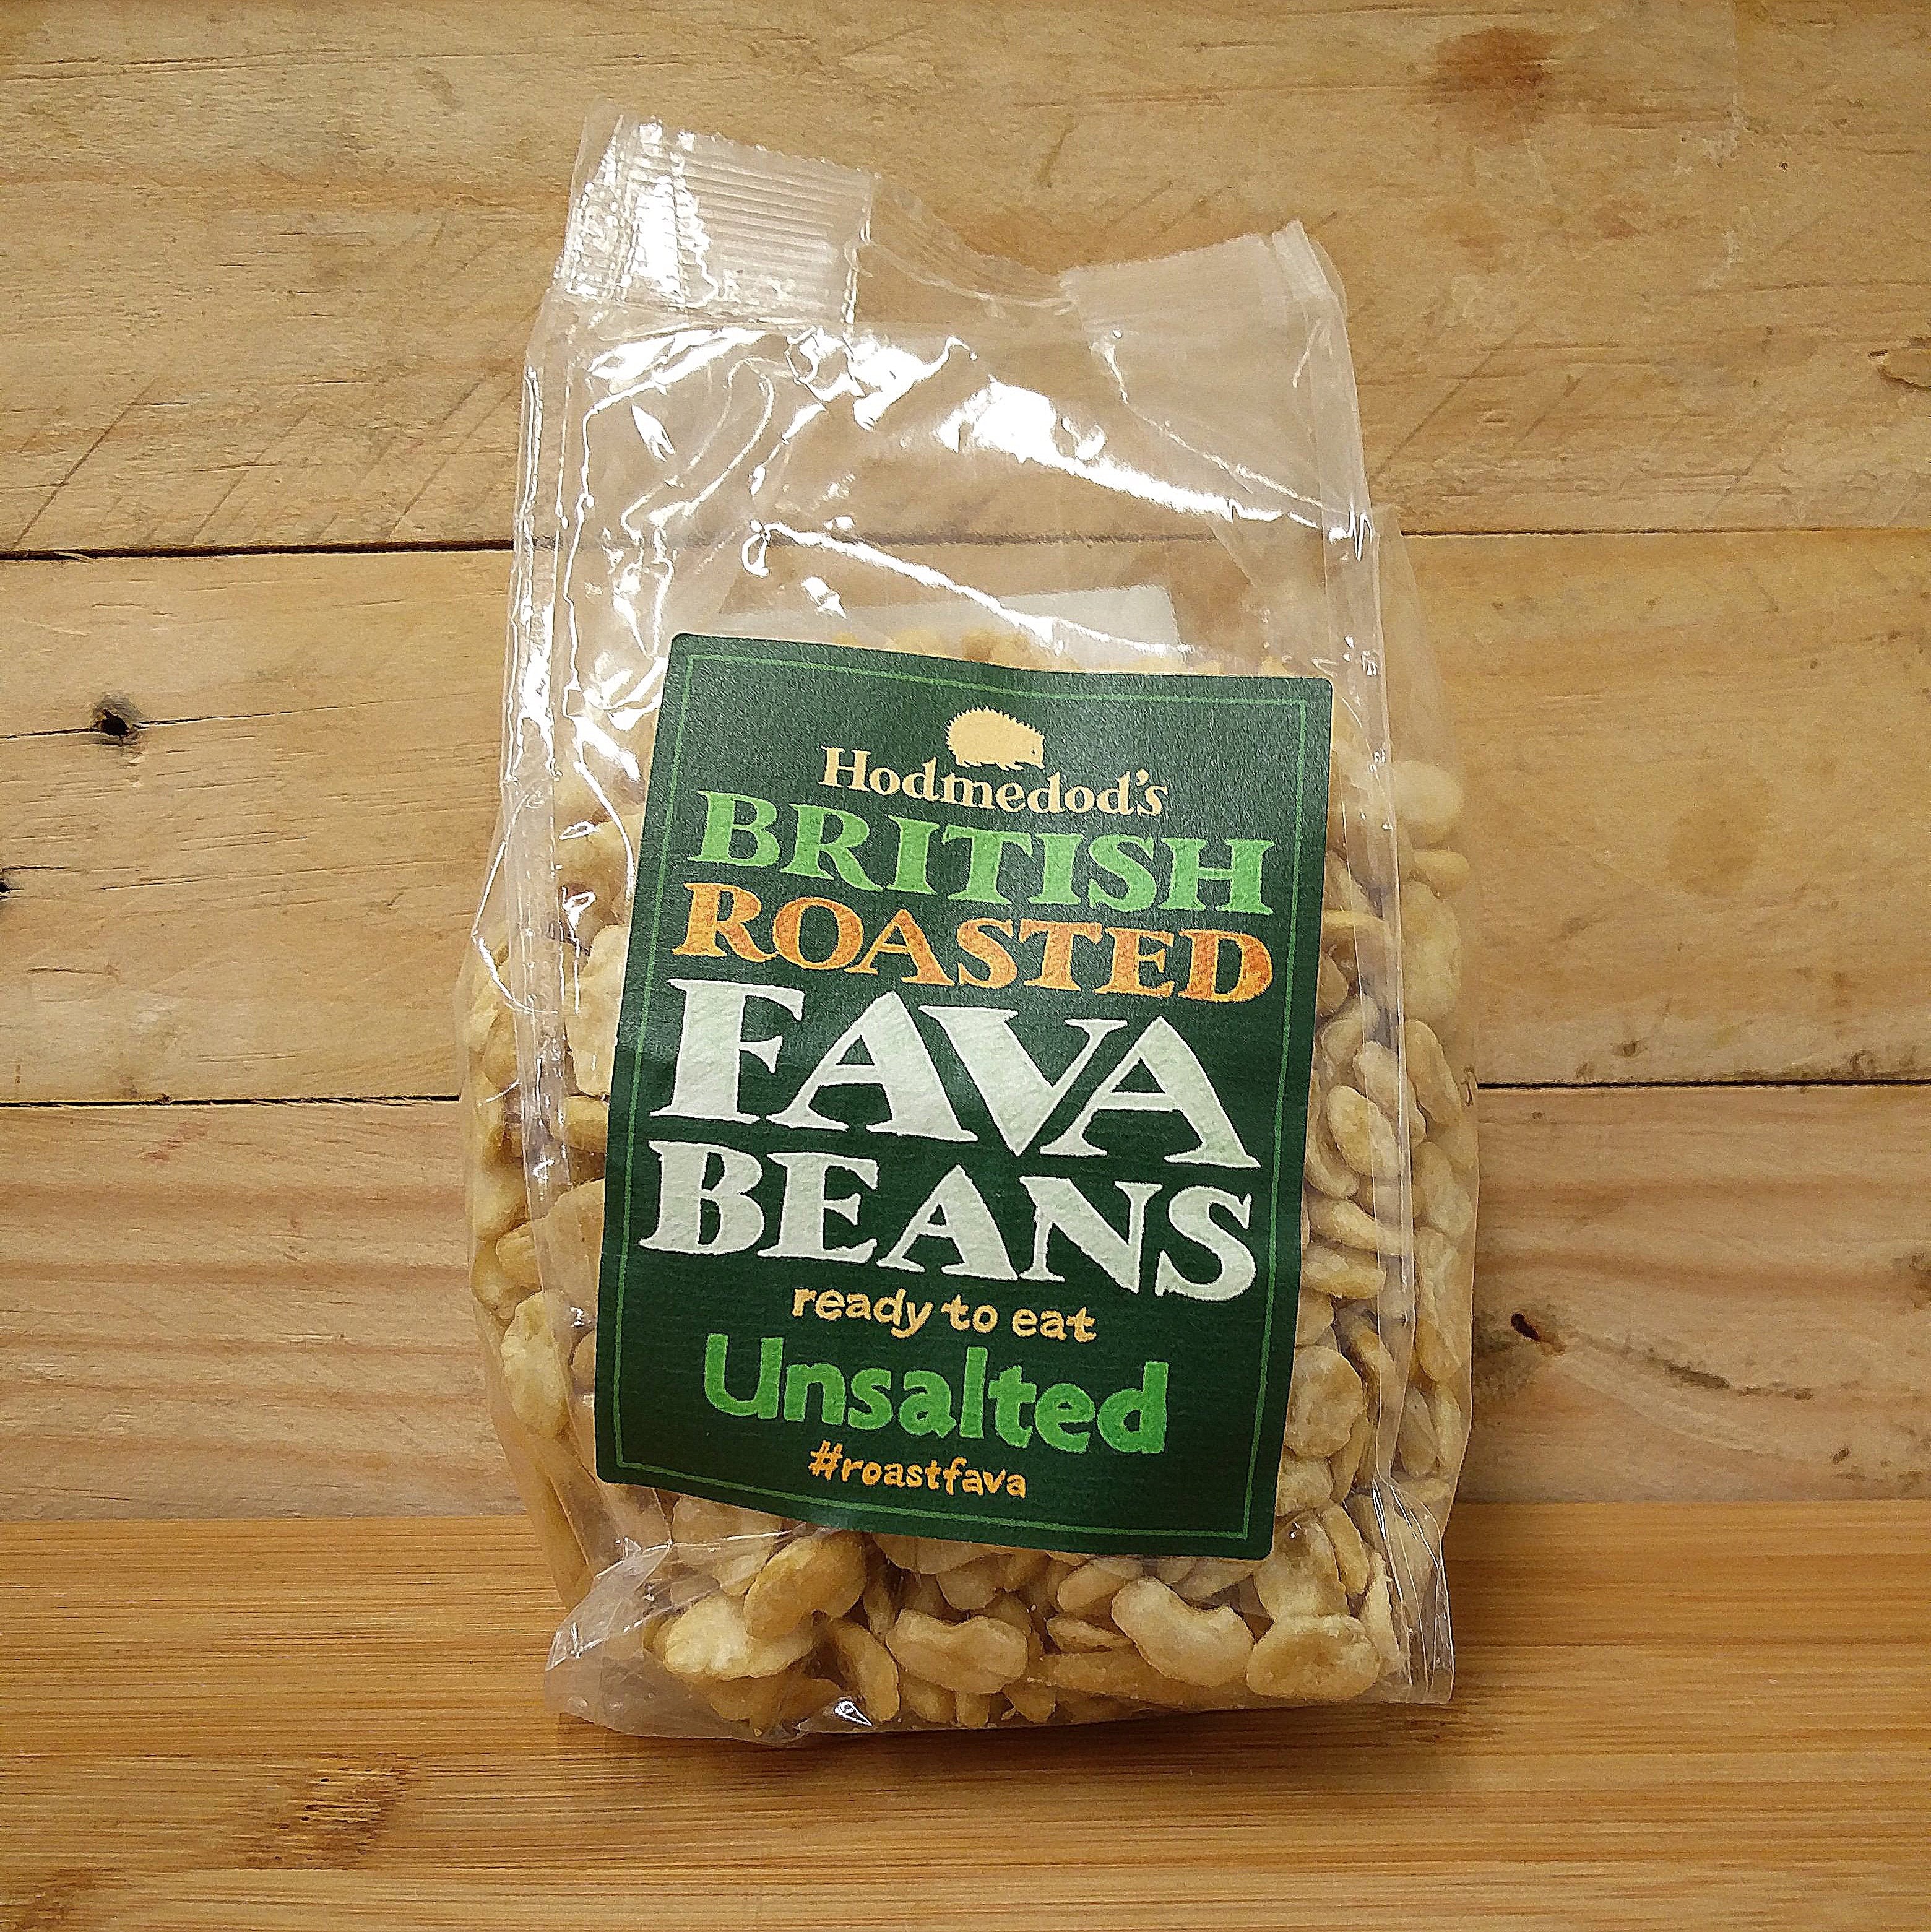 hodmedod's fava beans - unsalted snack sale